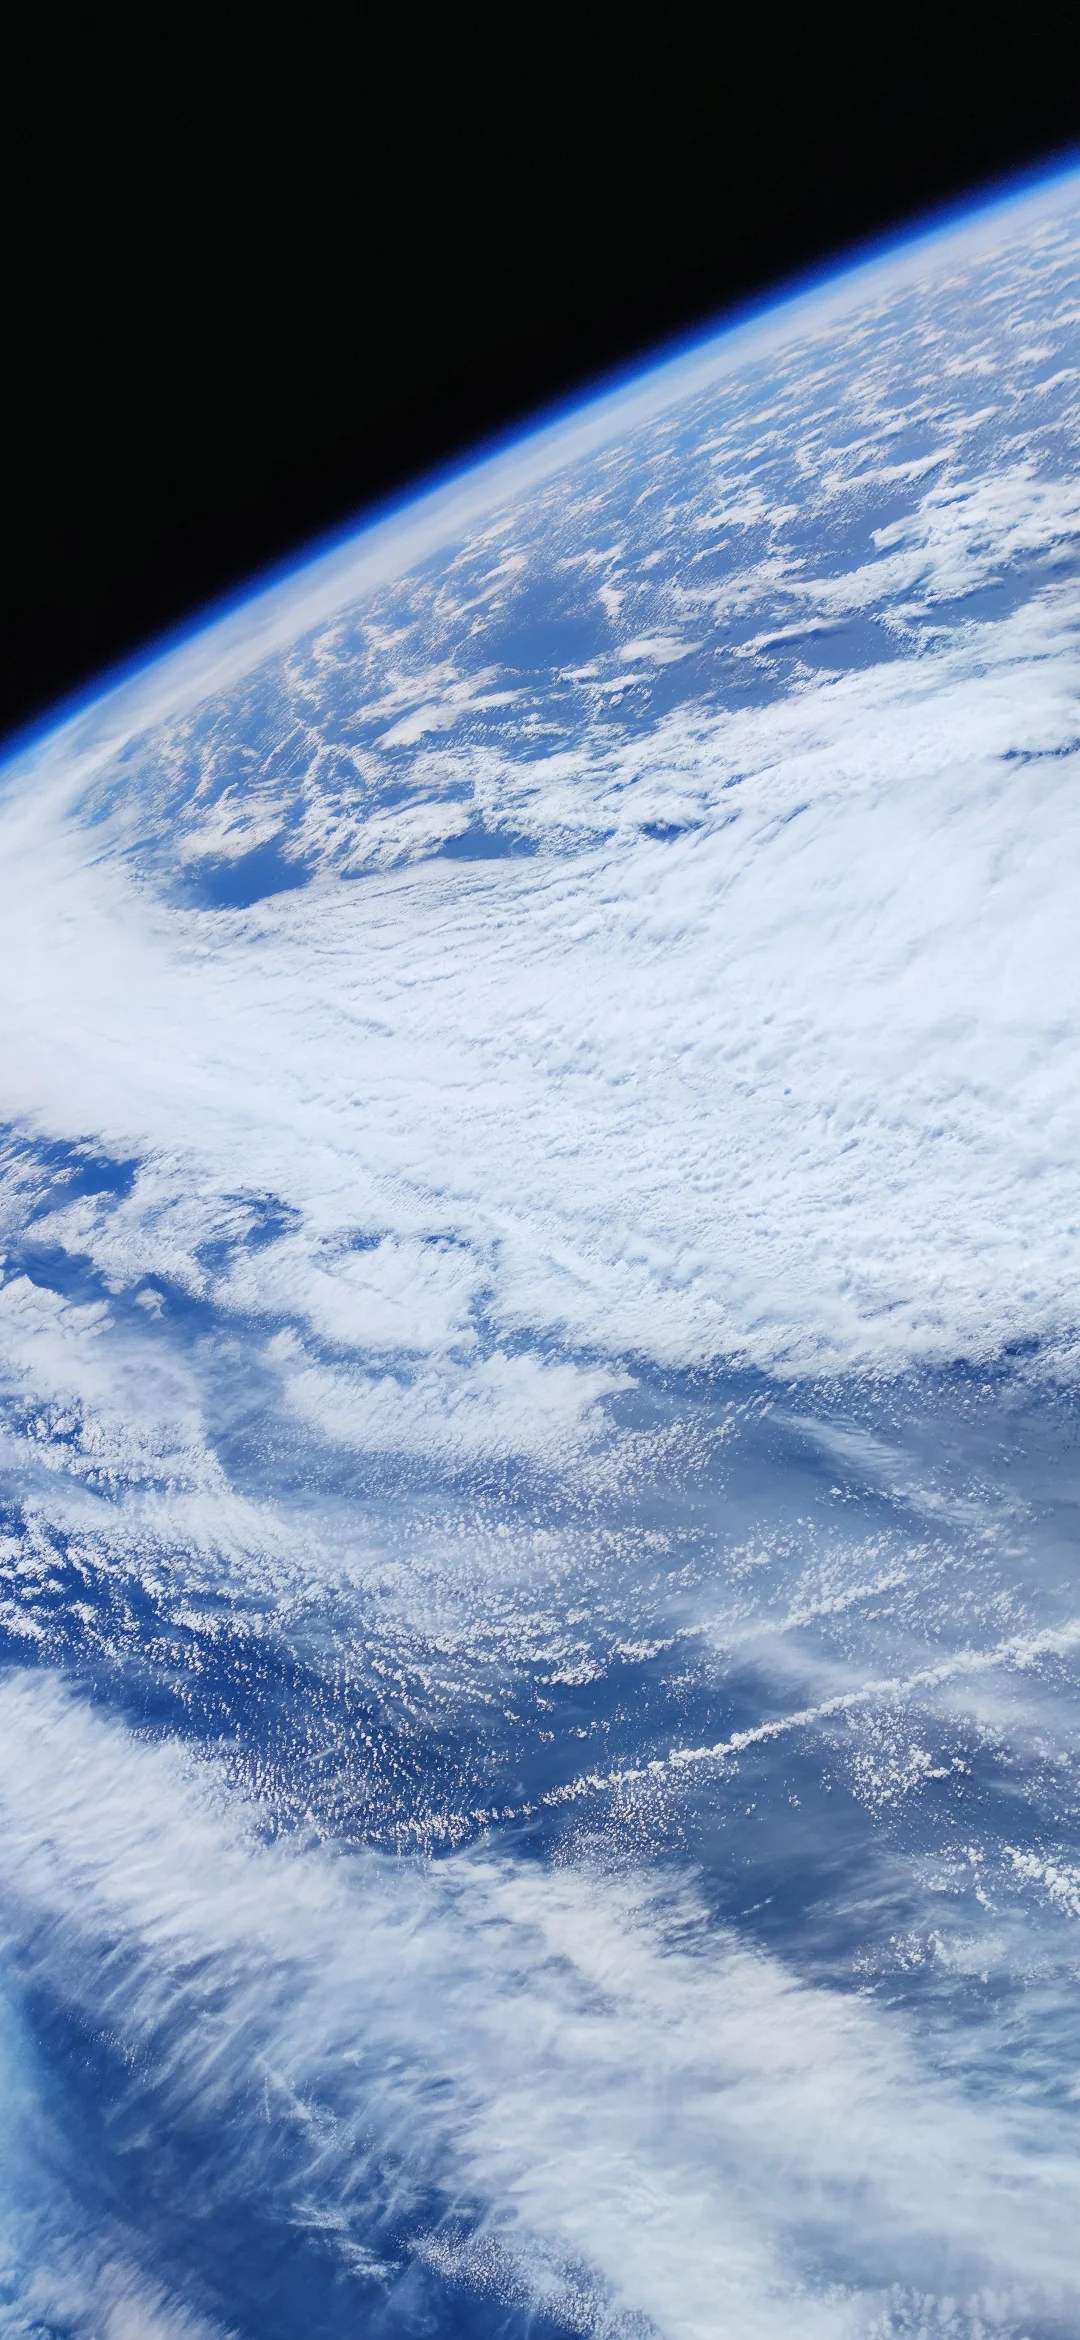 9 великолепных снимков Земли, сделанных на камеру Xiaomi Mi 10 Pro - фото 3